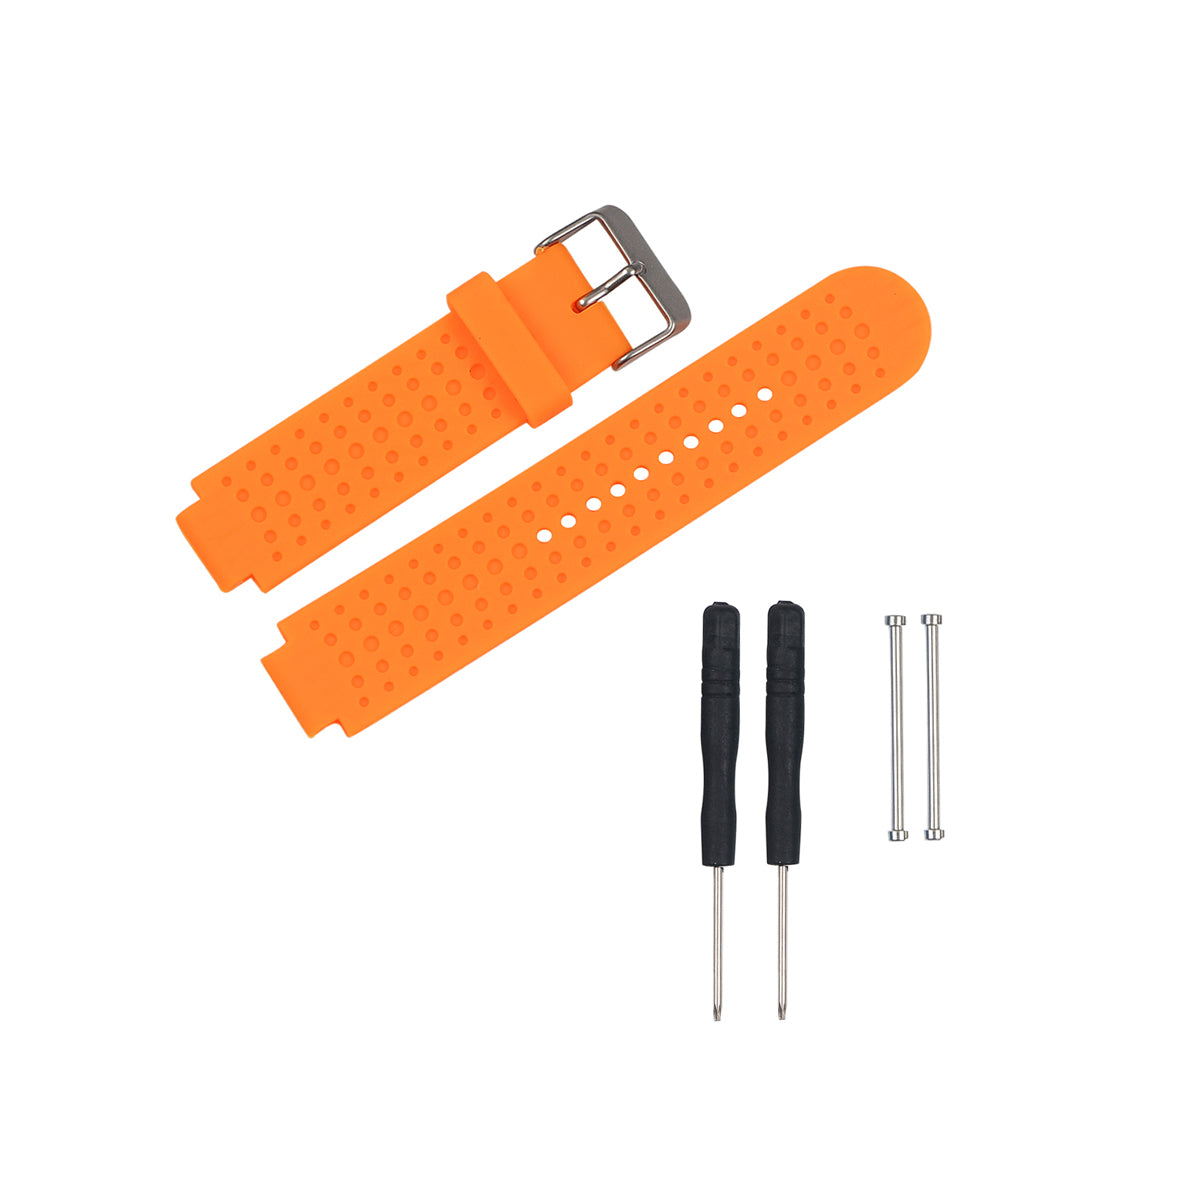 Garmin Forerunner 230/235/630/220/620/735 Replacement Bands Strap Kit Orange  